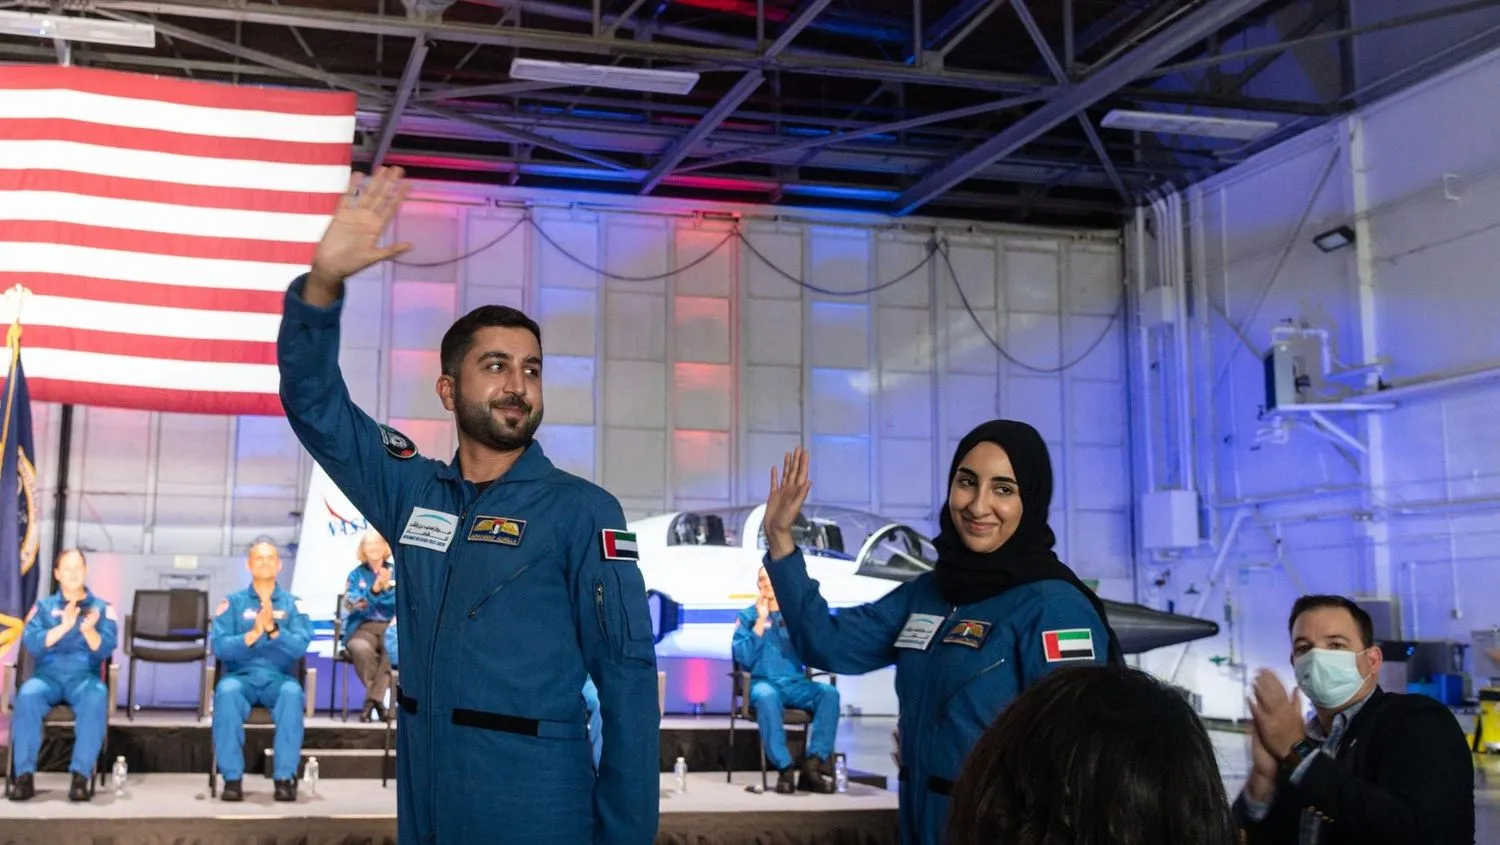 Mehr über den Artikel erfahren Neue VAE-Astronauten bereiten sich auf Ramadan und Familienzusammenführung vor: Bericht